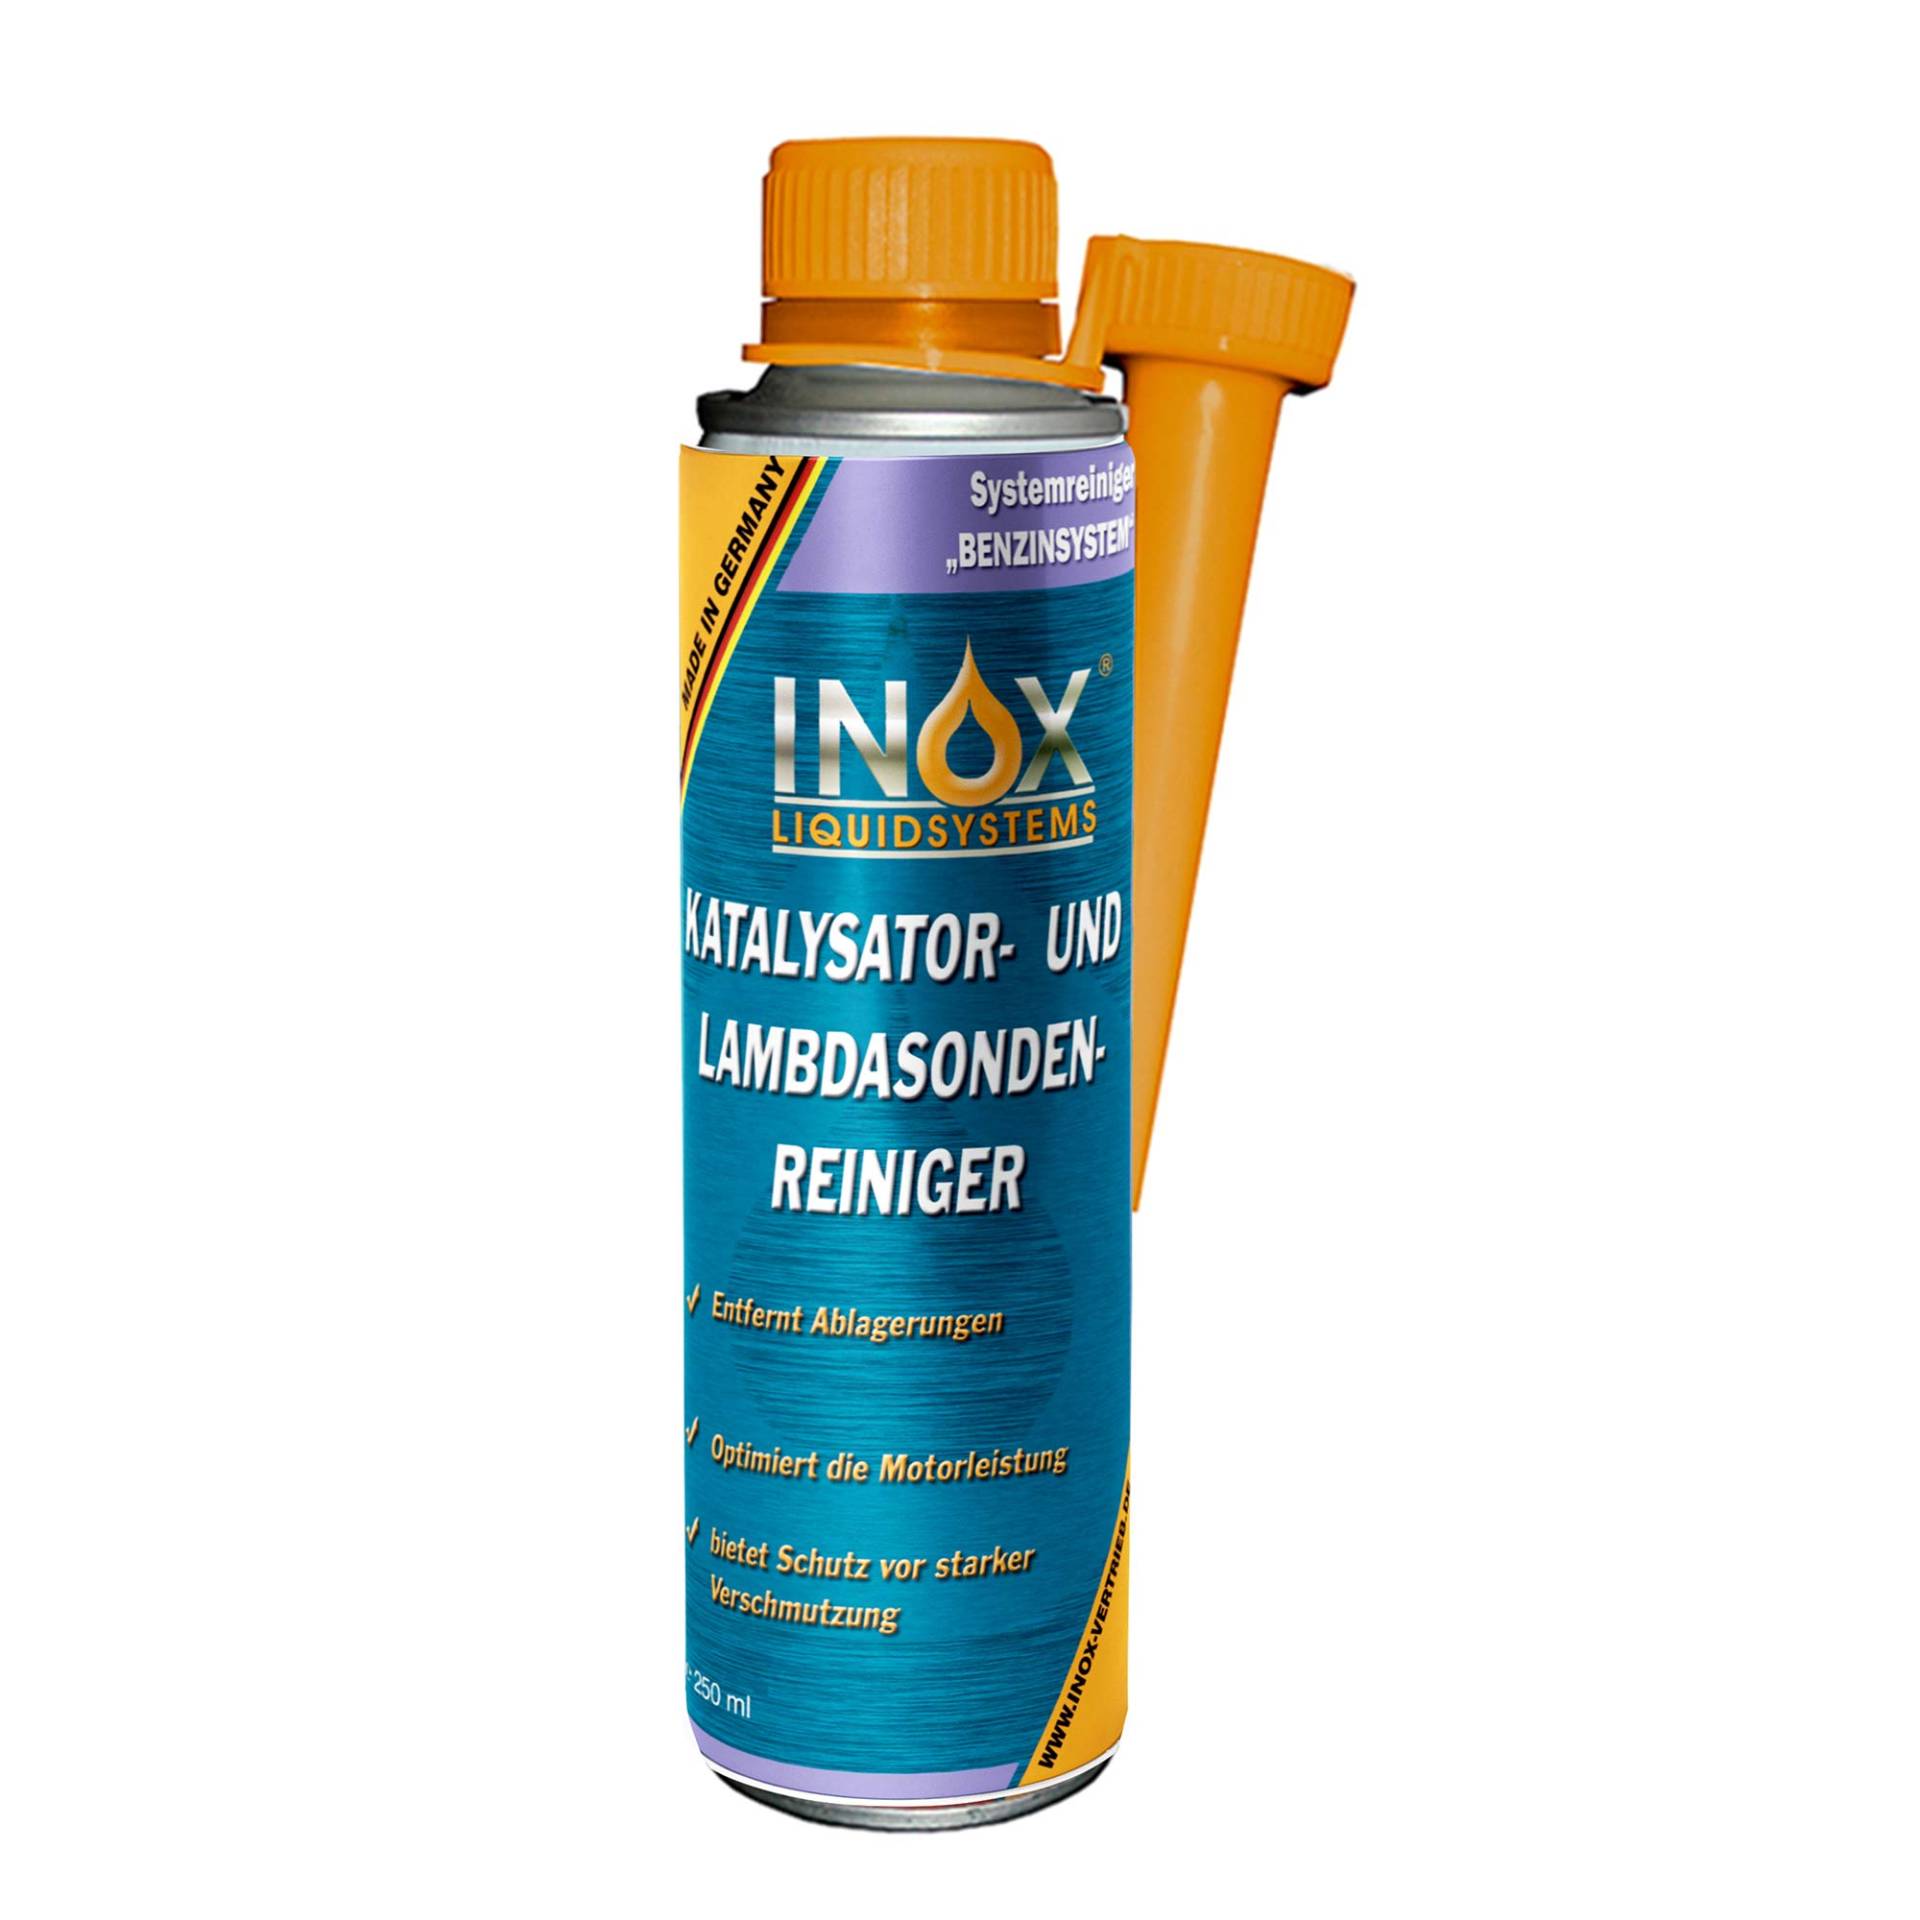 INOX® Katalysator- und Lambdasondenreiniger, 250 ml von INOX-LIQUIDSYSTEMS